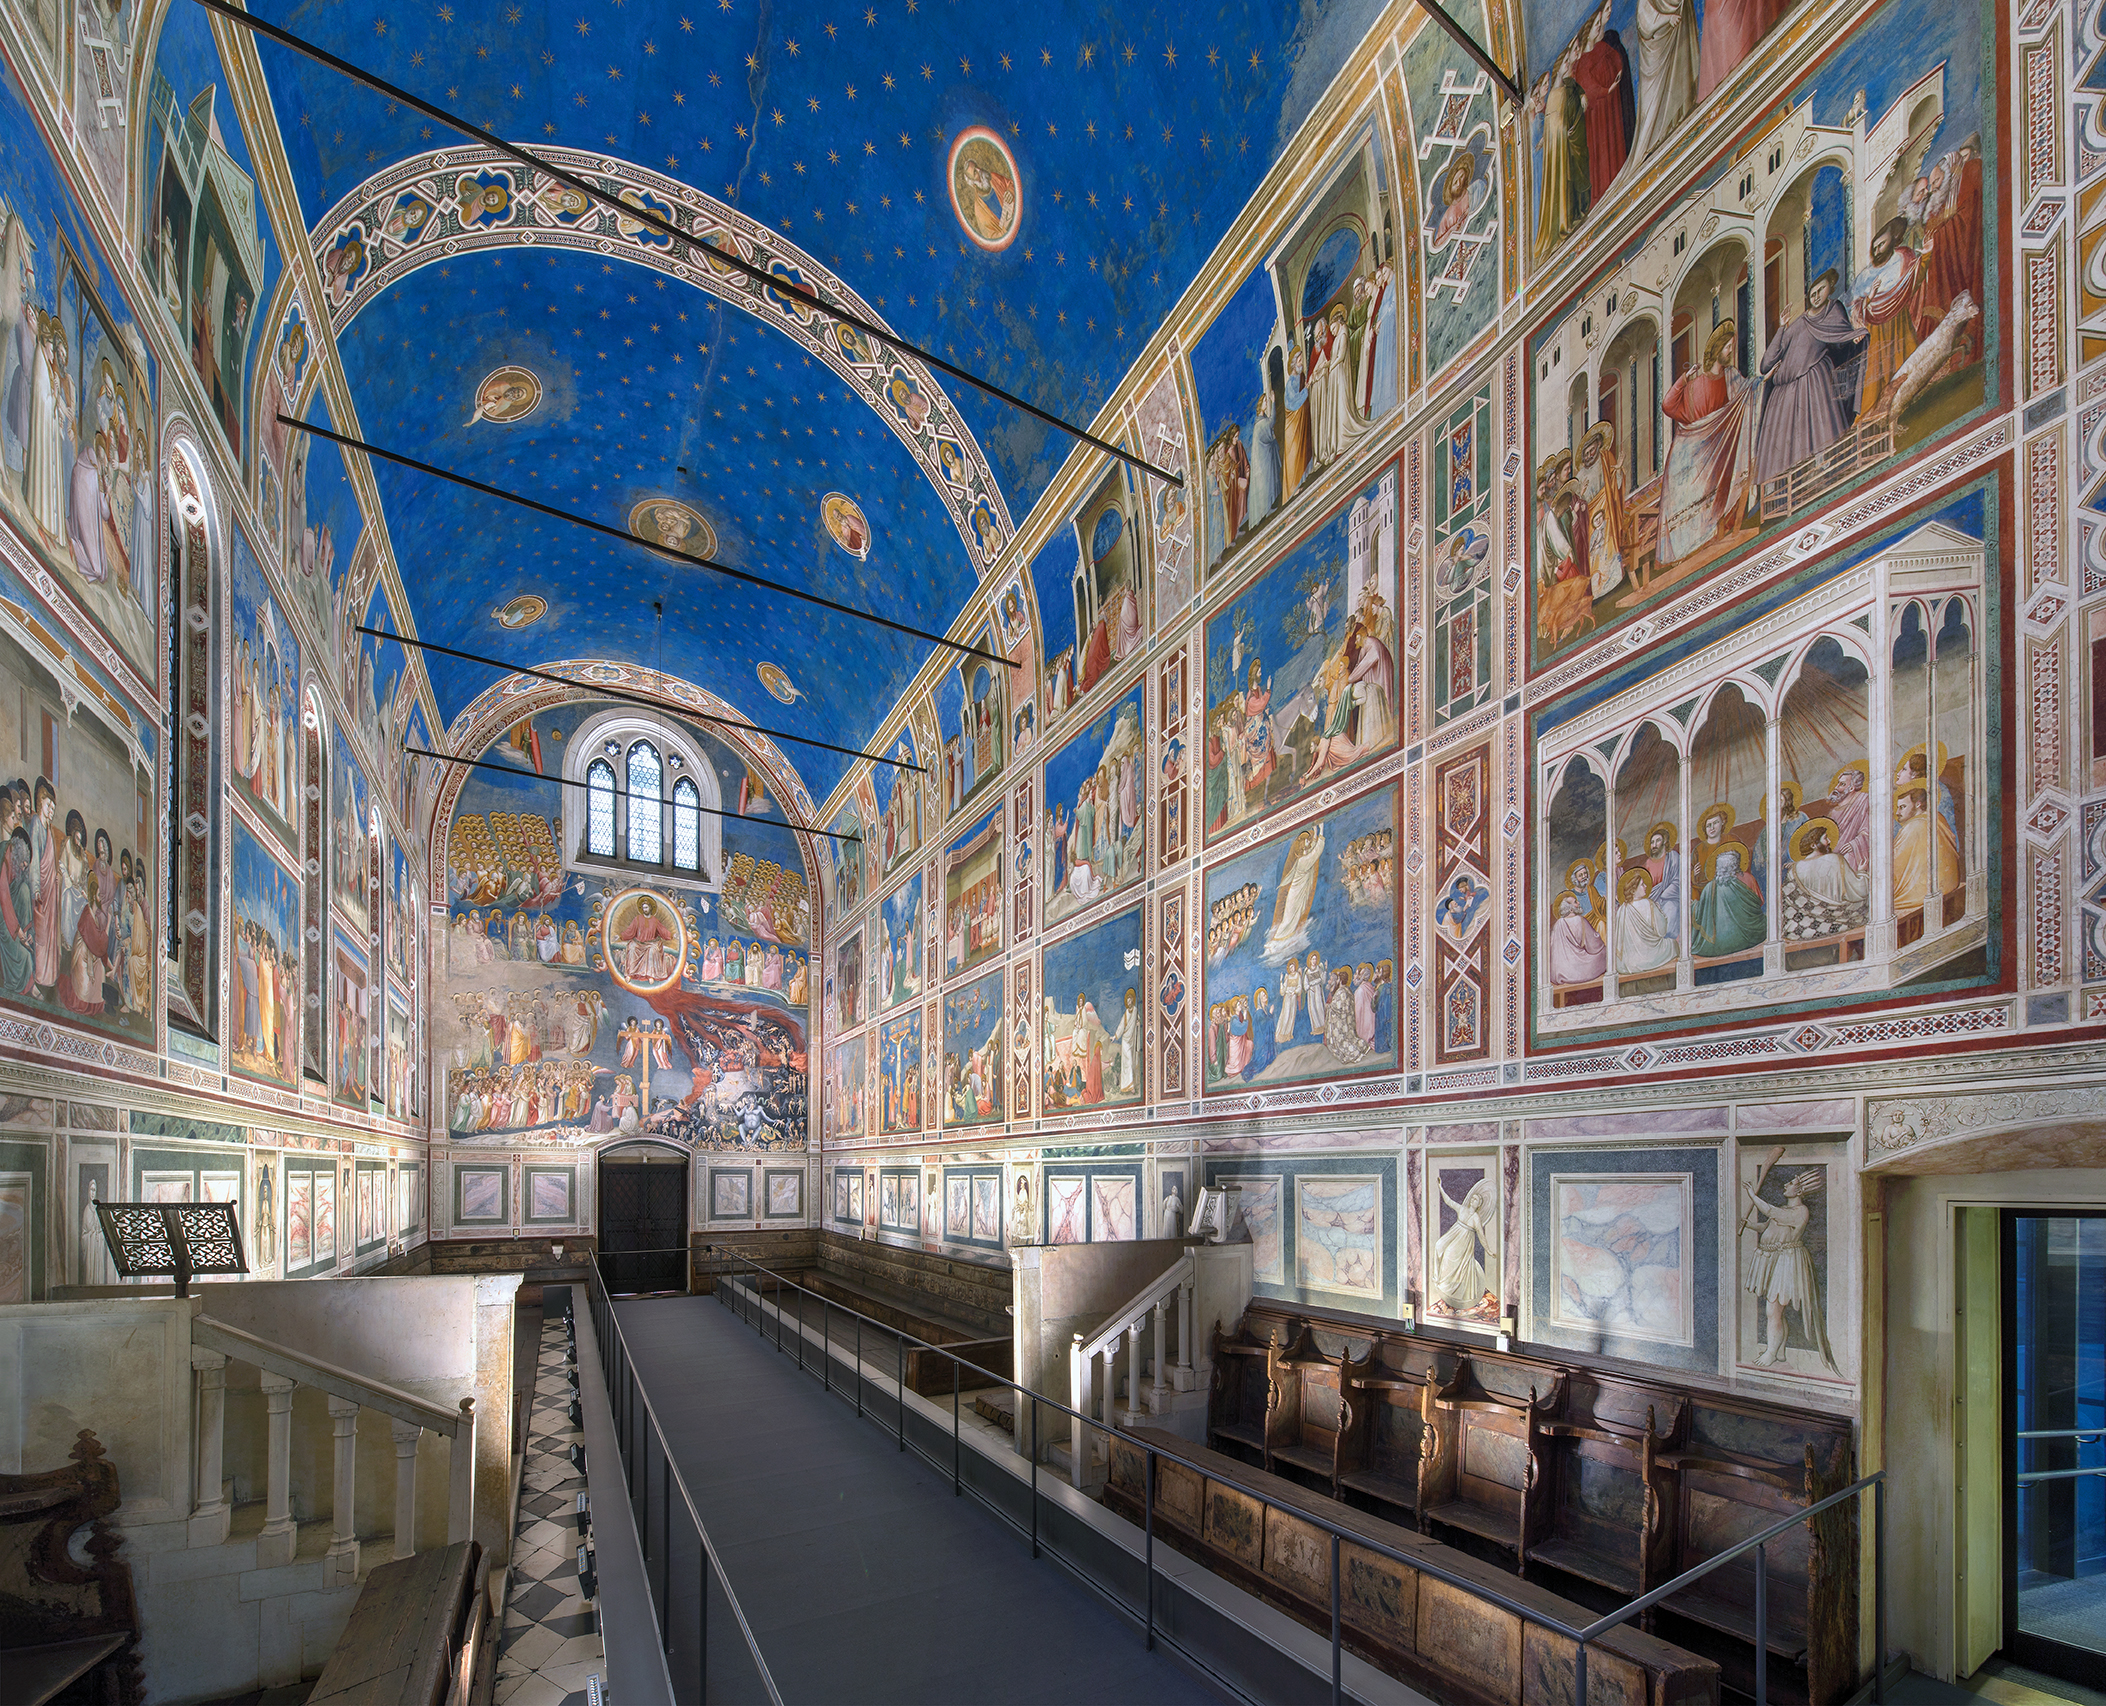 Lo scatto di Giotto. La Cappella degli Scrovegni nella fotografia tra ‘800 e ‘900